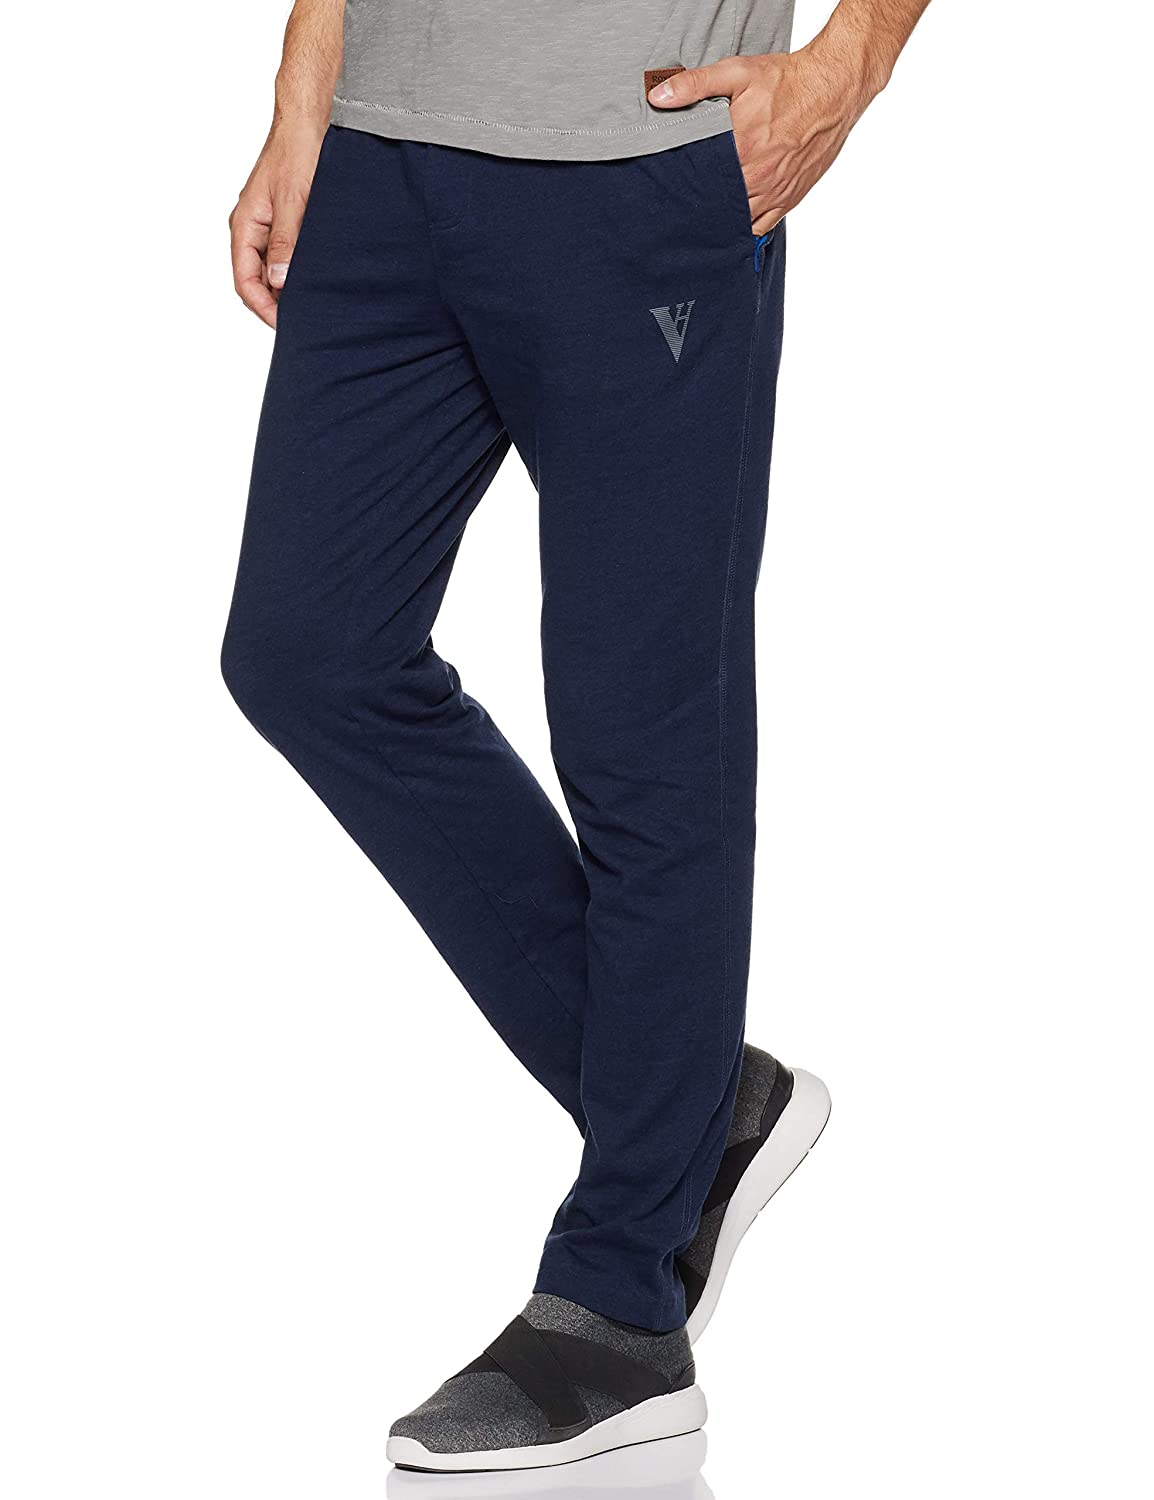 Van Heusen Men's Dress Pants, Charcoal, 36W / 36L price in UAE | Amazon UAE  | kanbkam